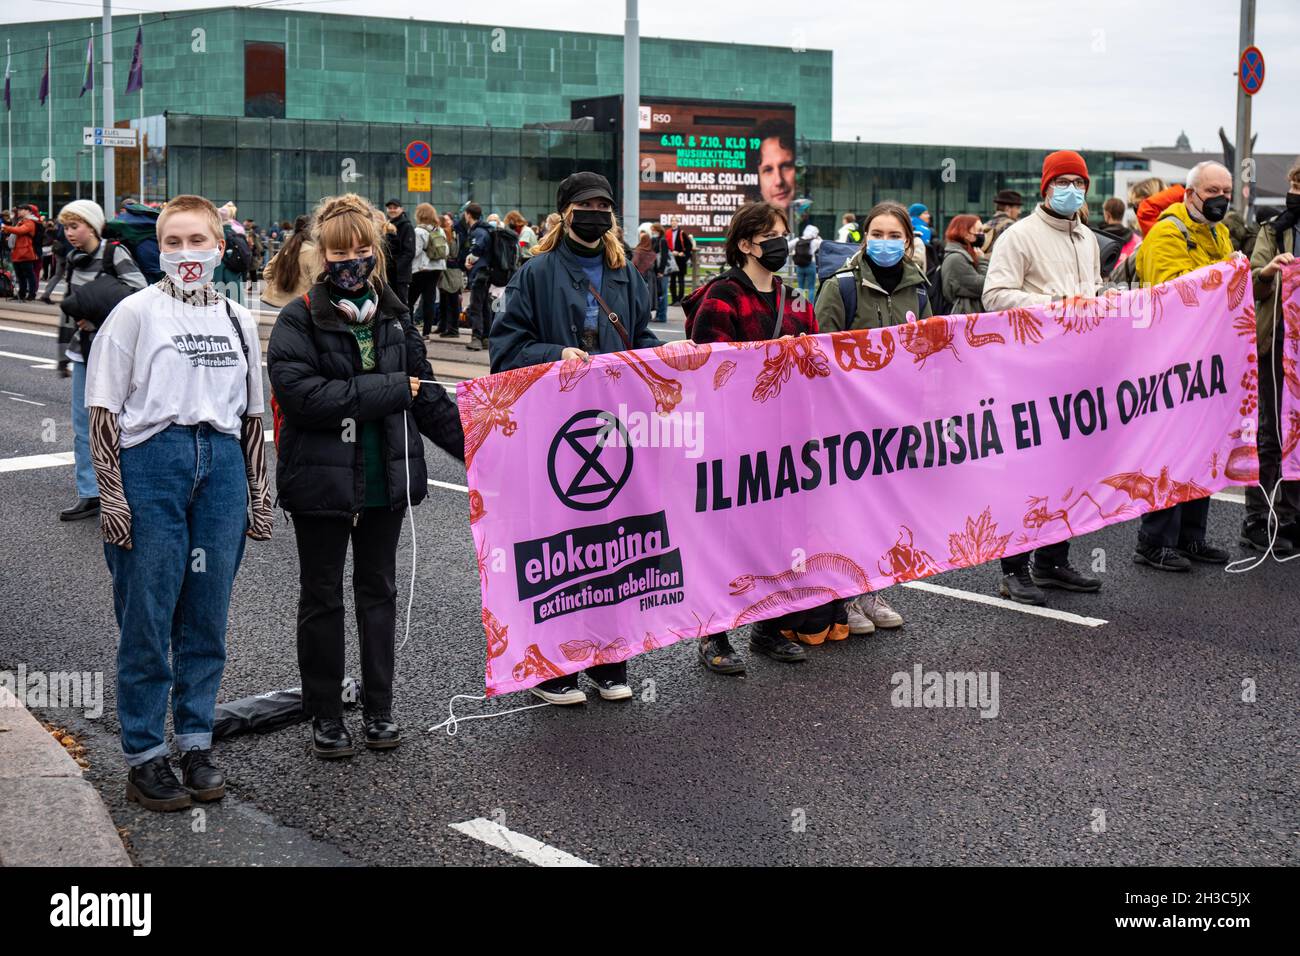 Elokapina ou extinction rébellion Finlande les manifestants pour le changement climatique tiennent une bannière et bloquent le trafic de Mannerheimintie à Helsinki, en Finlande Banque D'Images